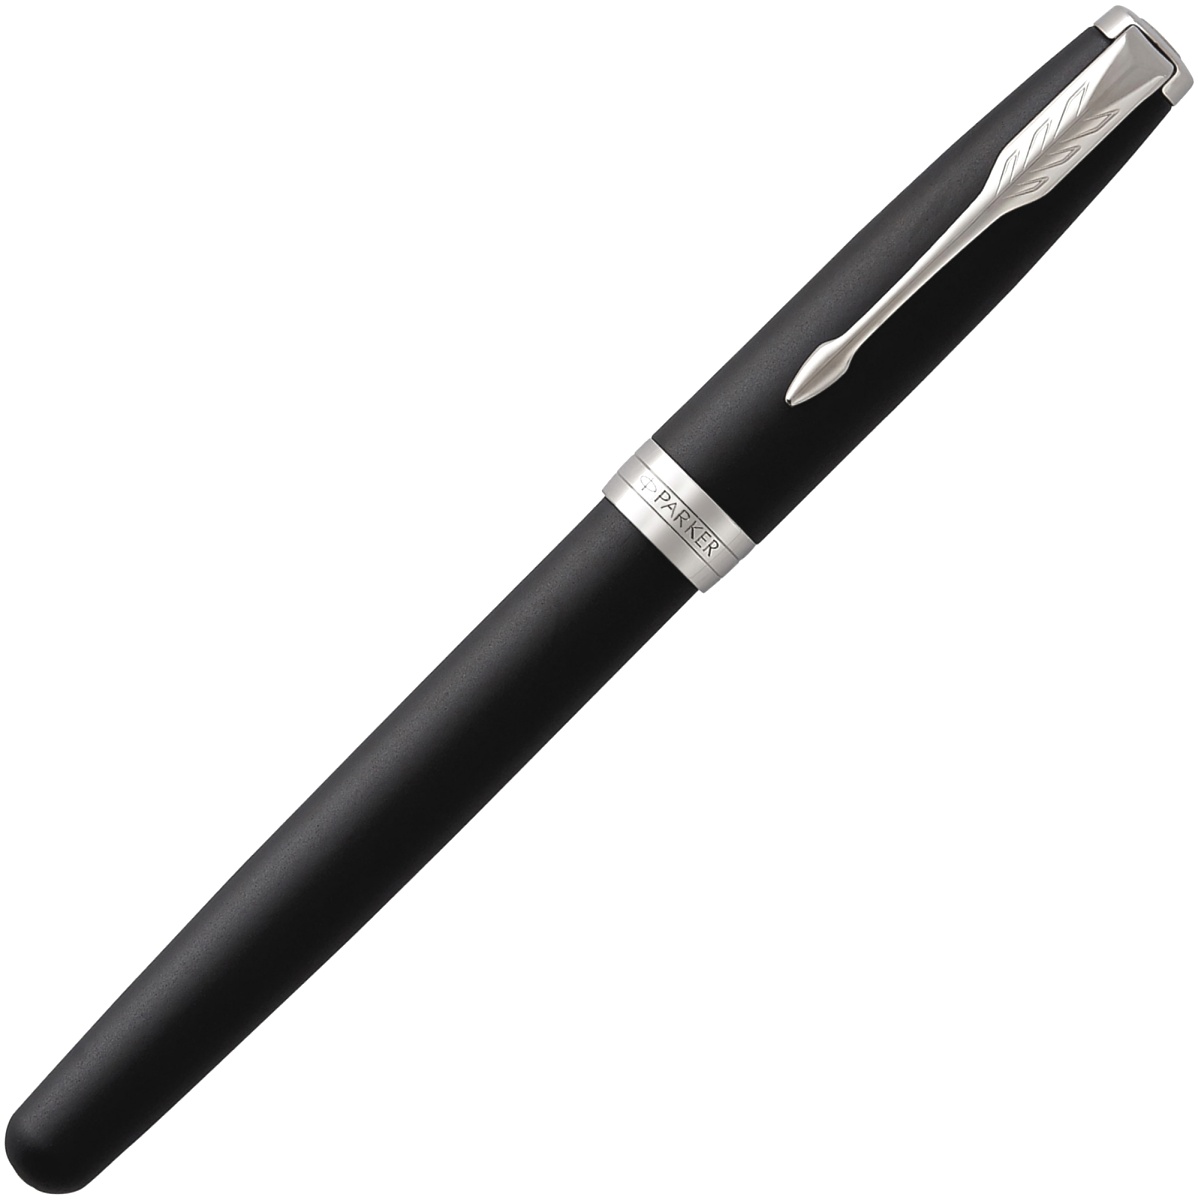  Перьевая ручка Parker Sonnet Core F529, Matte Black CT (Перо F), фото 2